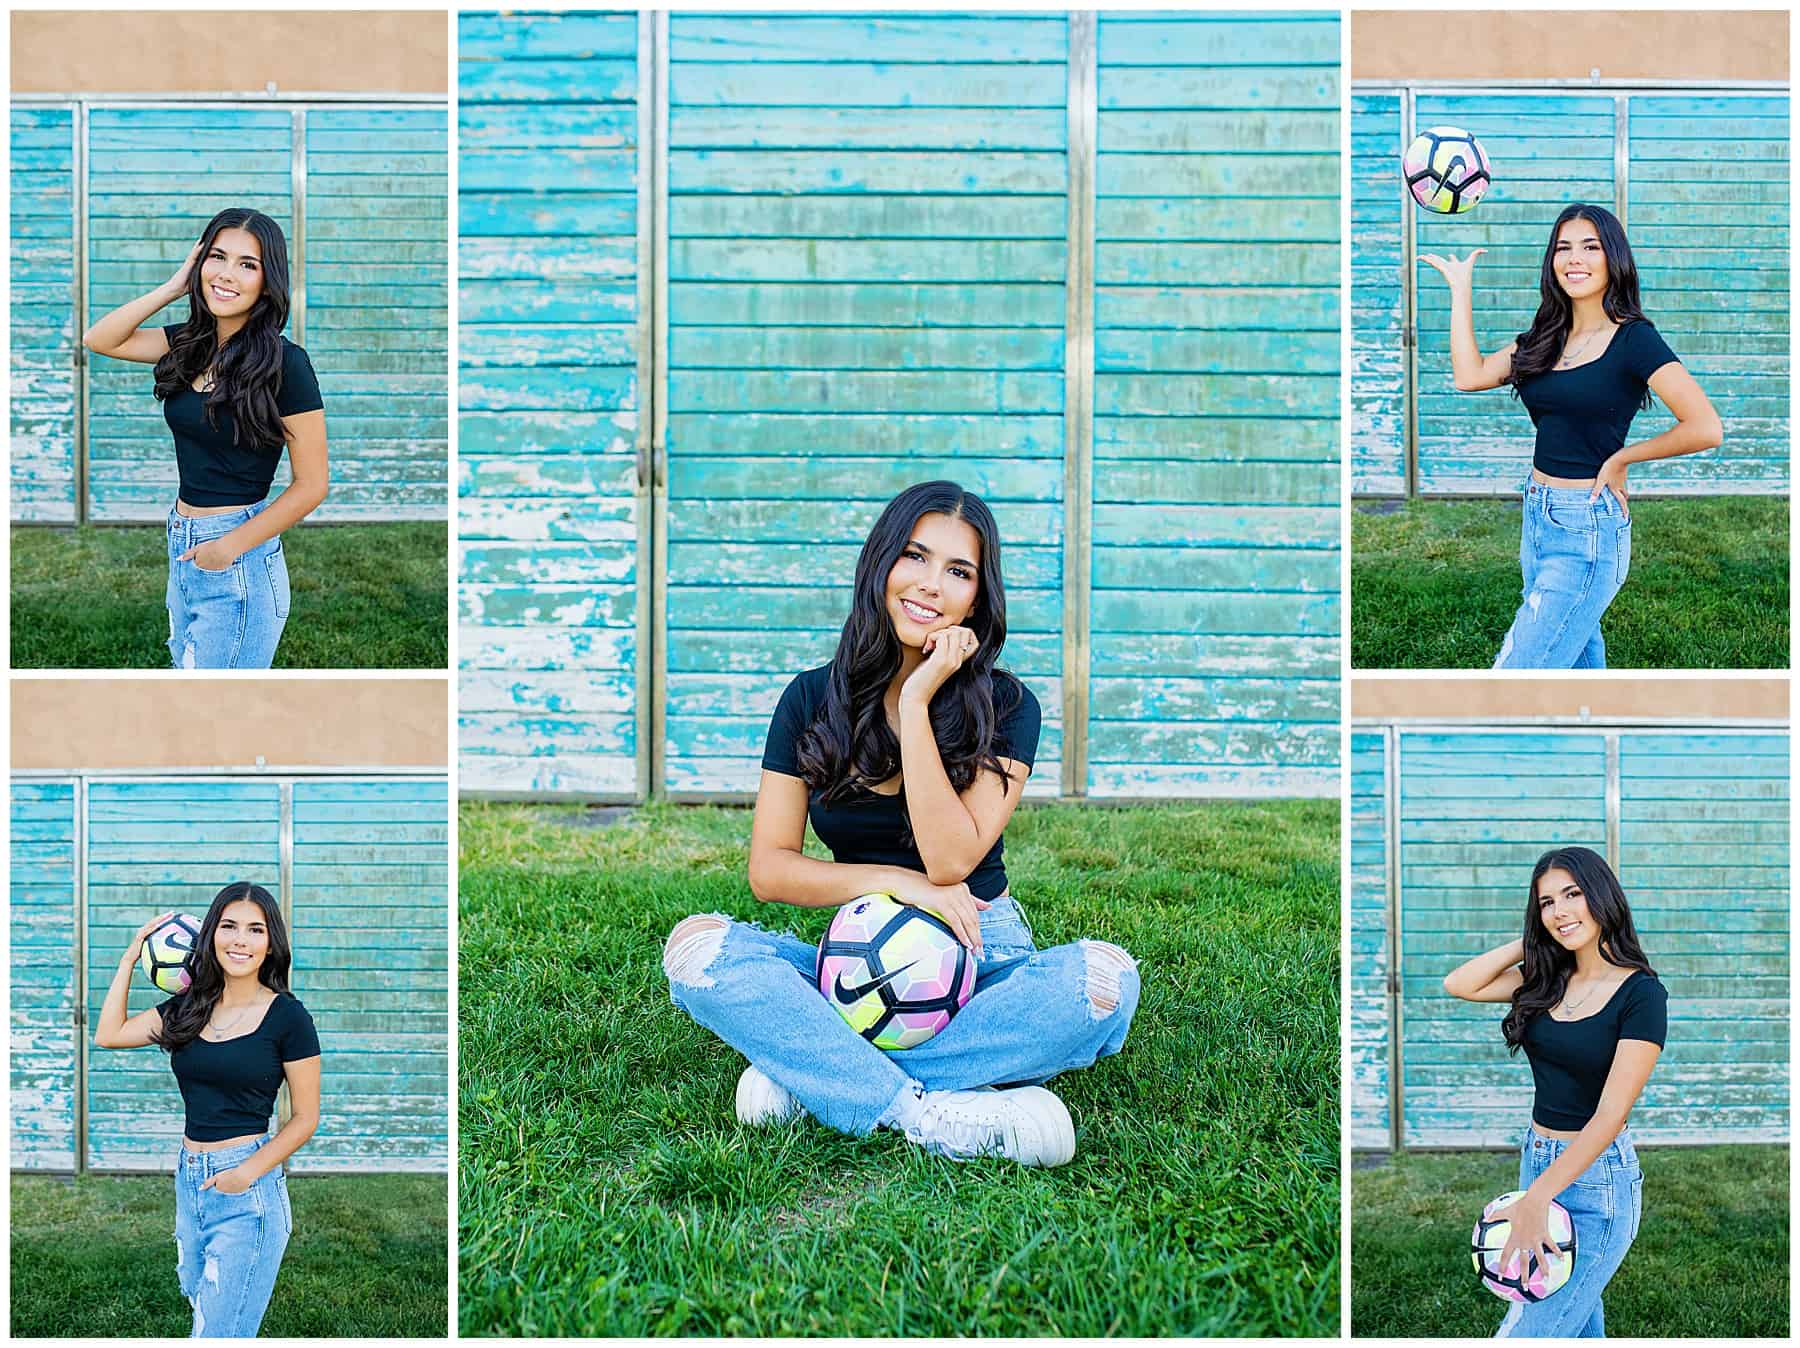 Soccer Senior Portraits, Hope Christian High School, Senior portraits, New Mexico senior photographer, Albuquerque Senior Photographer 